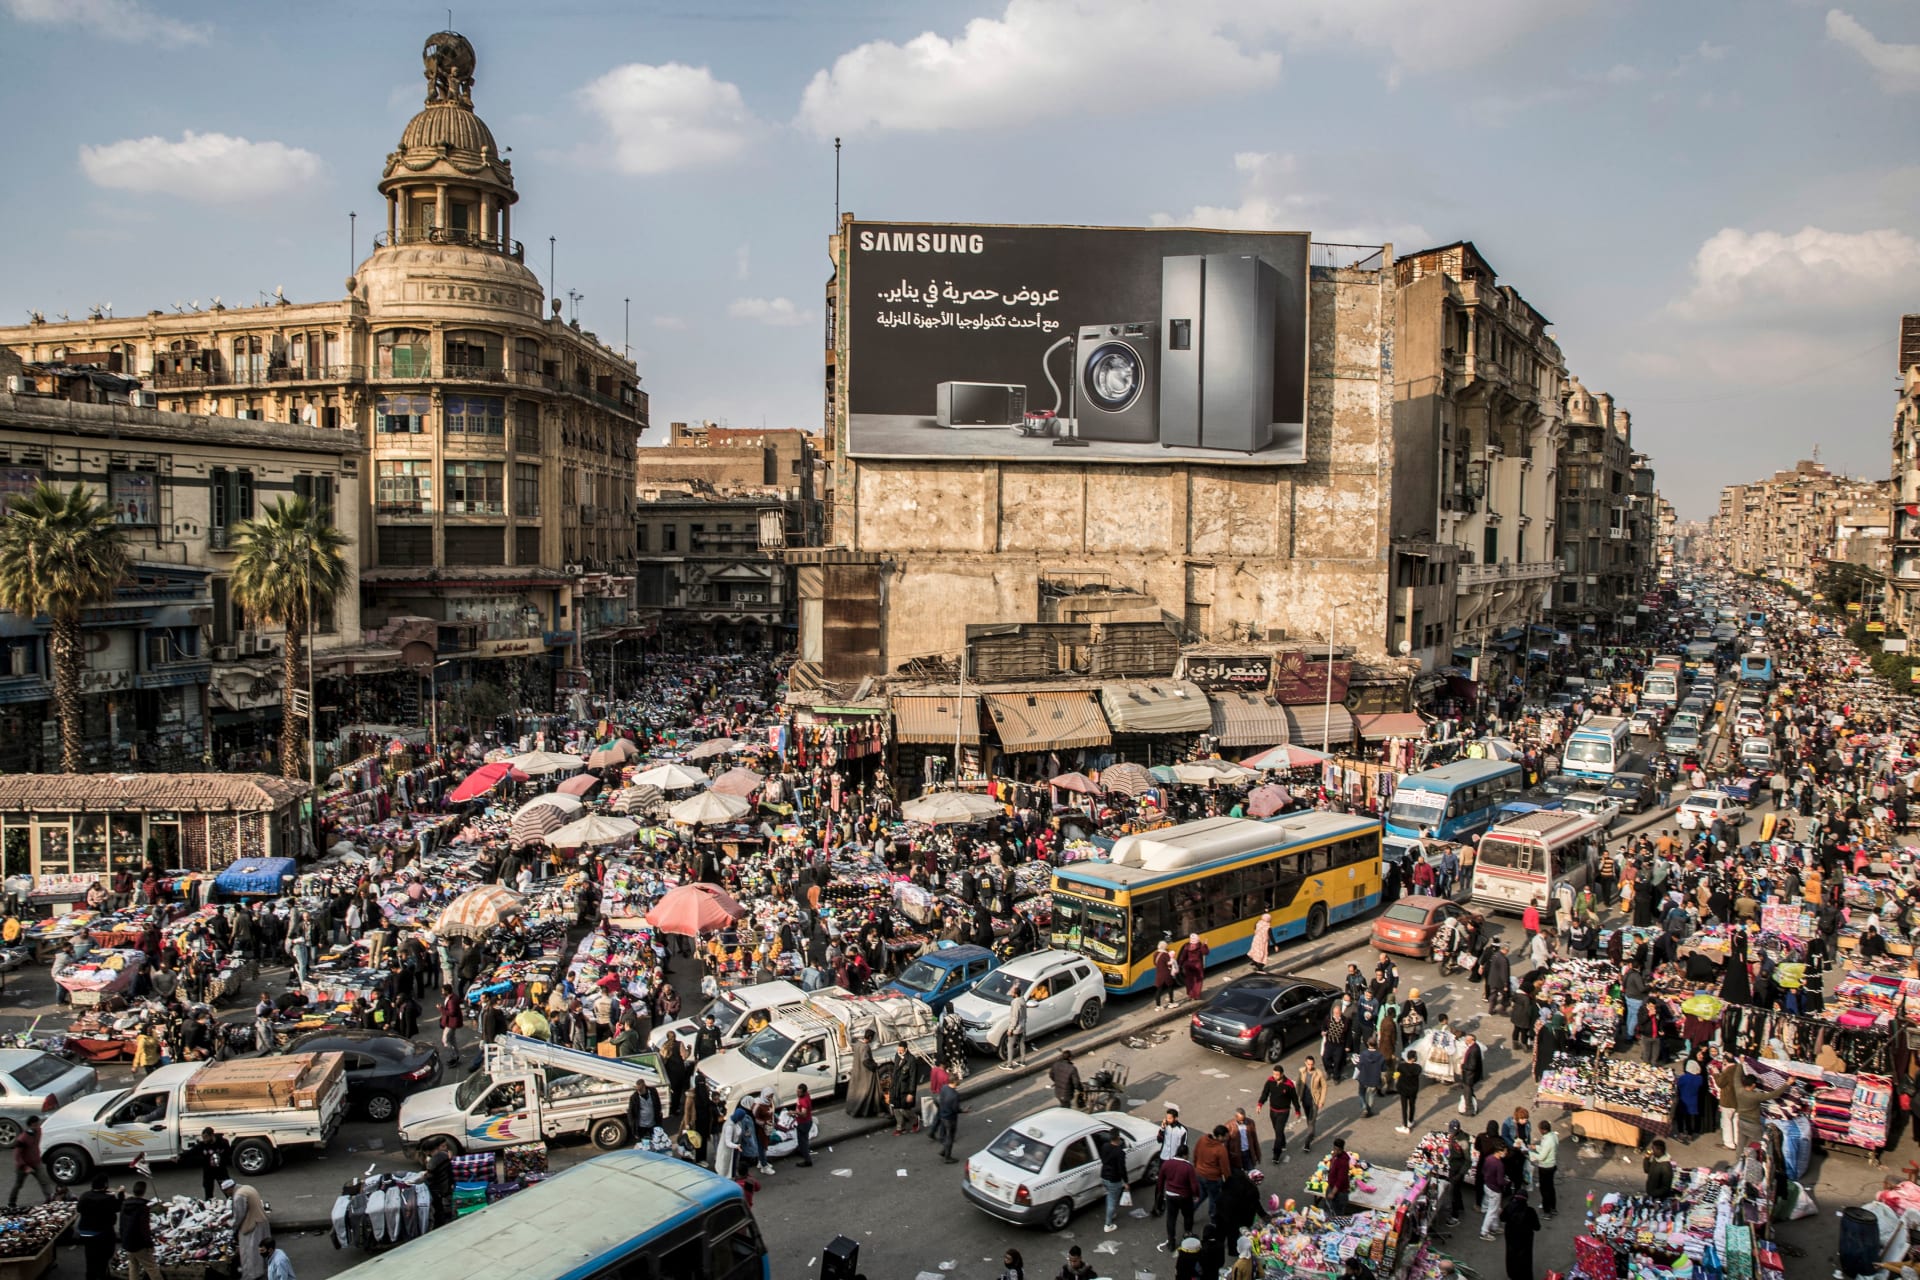 علاء مبارك يعلق على الزيادة السكانية في مصر بفيديو لـ3 رؤساء سابقين